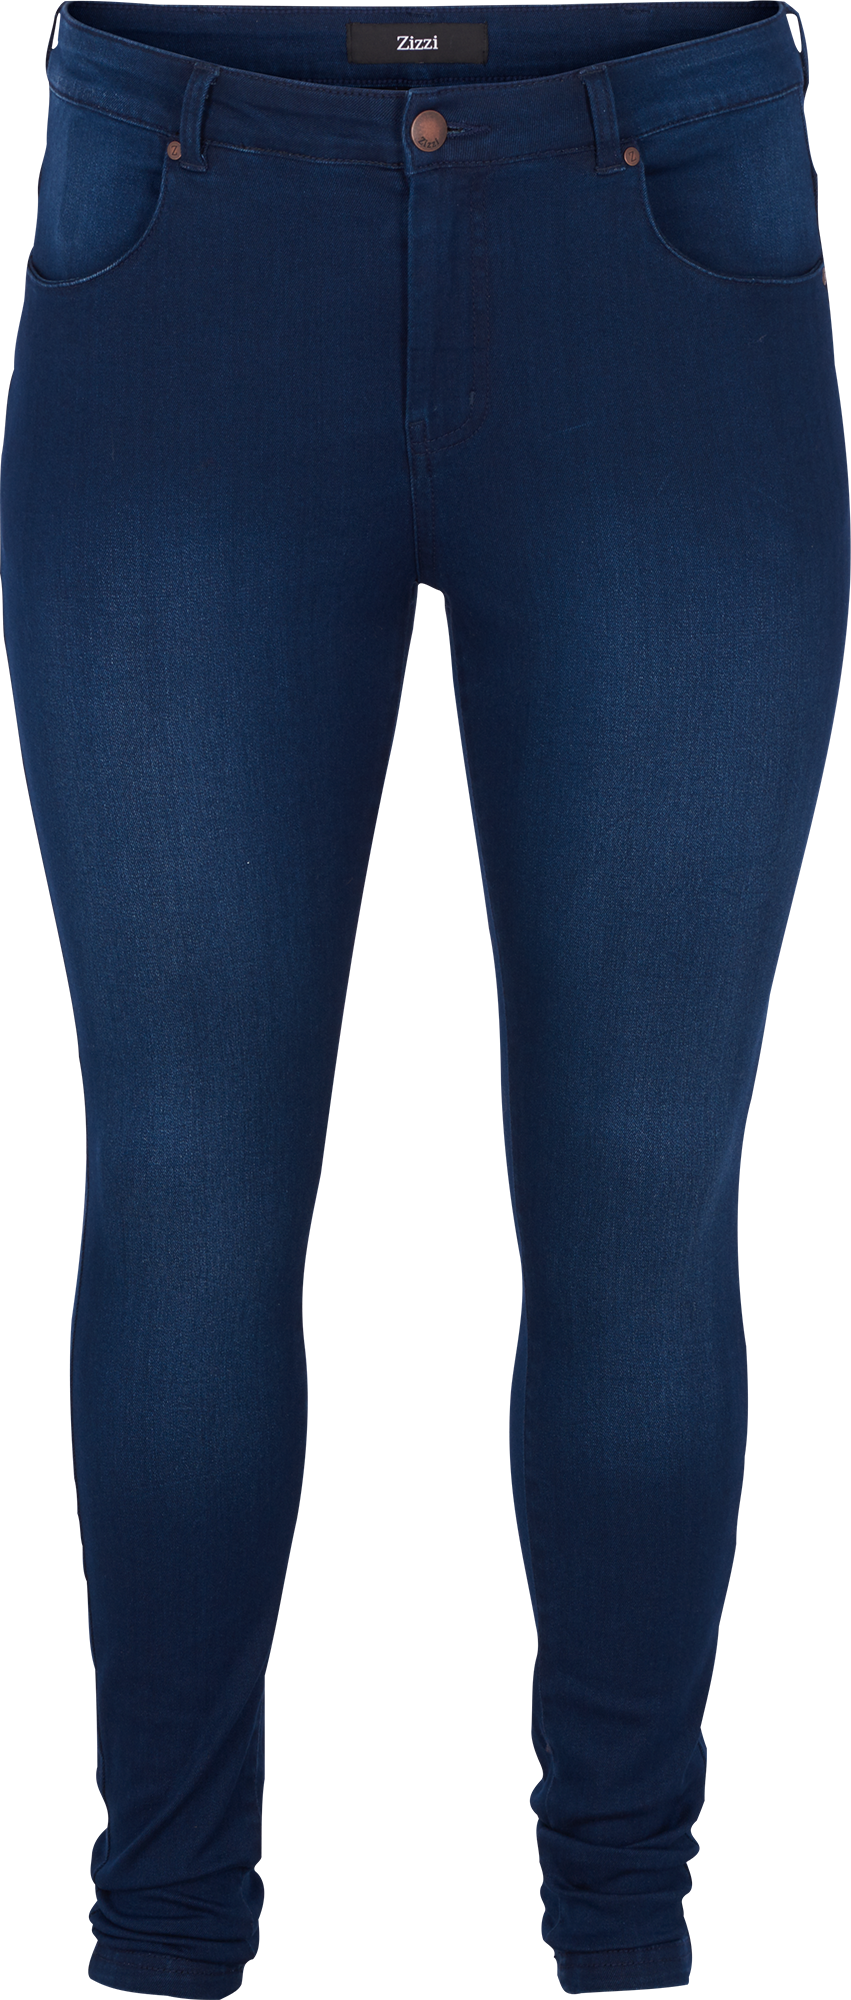 Mørkeblå AMY bukser i mørkeblå denim med 82 cm benlængde fra Zizzi